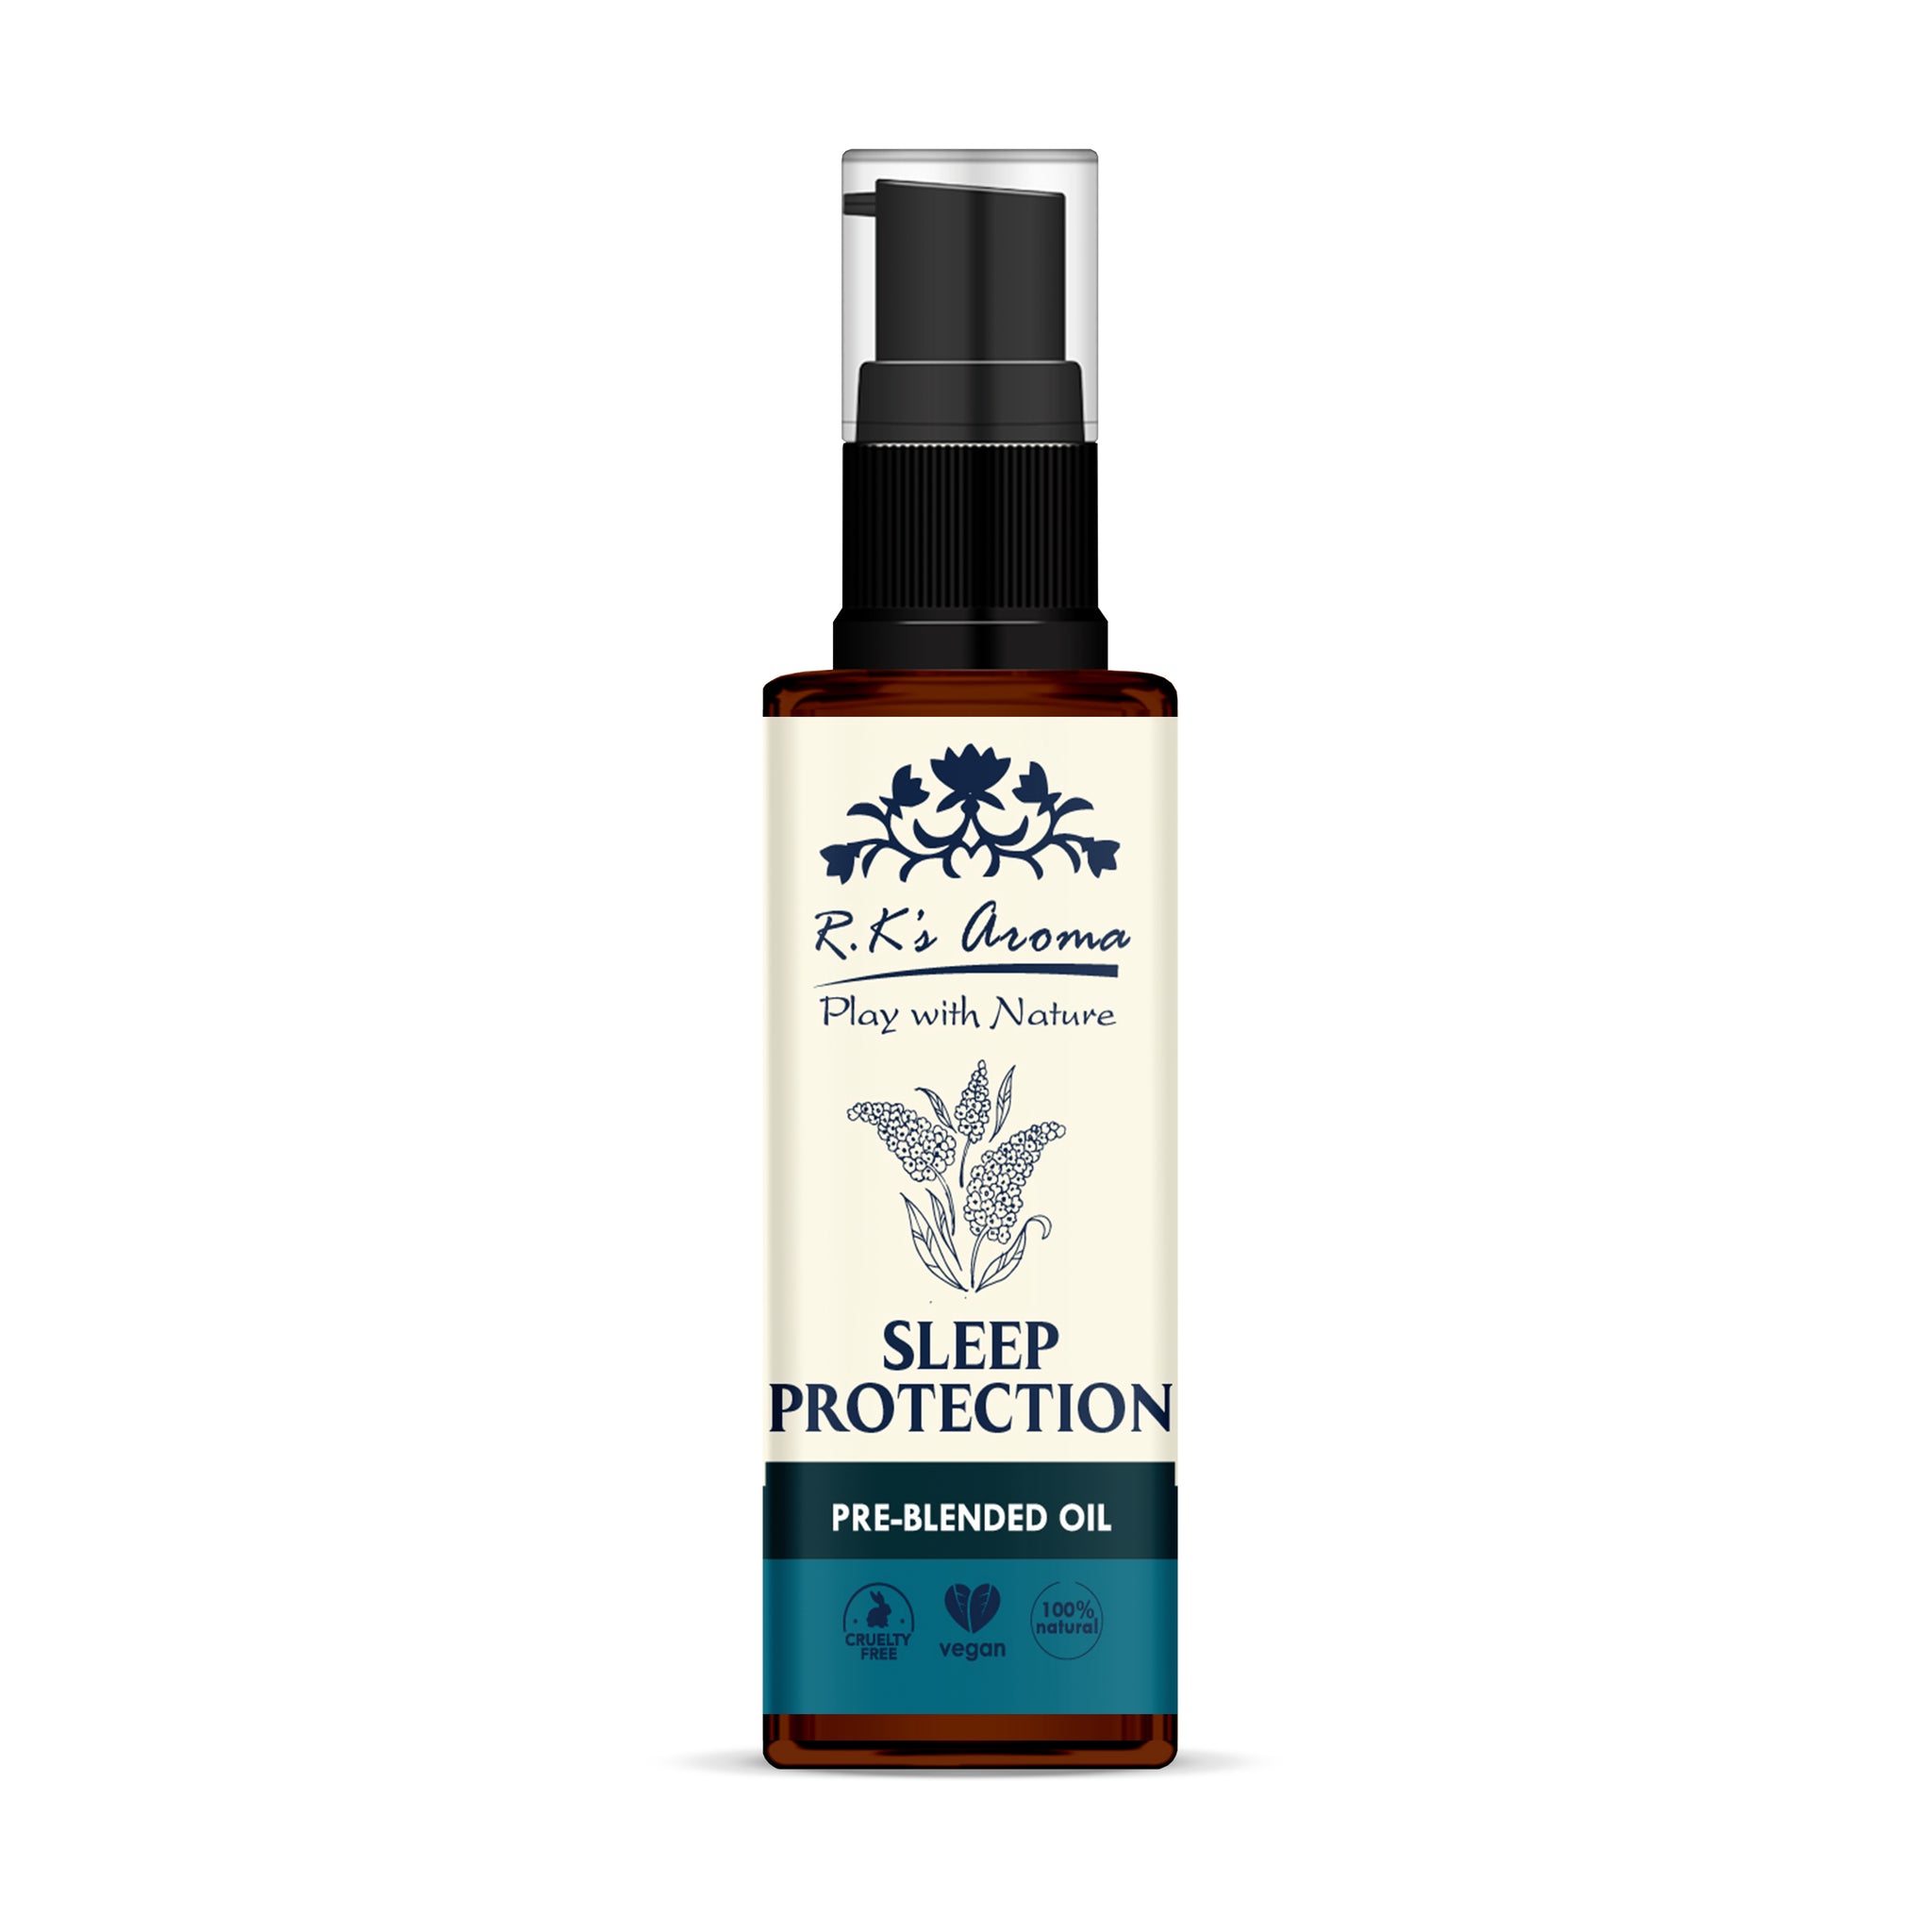 Sleep Protection Oil